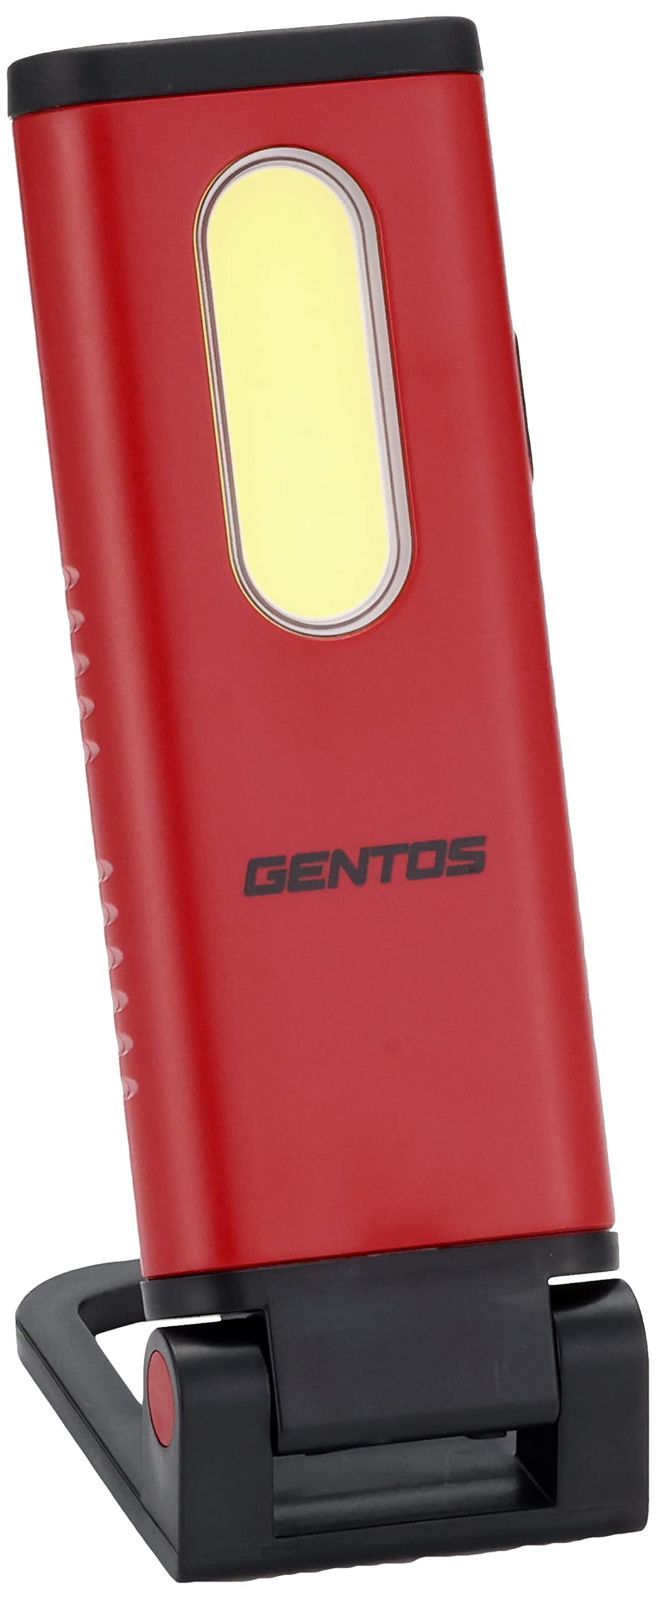 新商品!新型 GENTOS ジェントス 作業灯 LED ワークライト ハンディタイプ USB充電式 700ルーメン 実用点灯 5時間 耐塵 防滴  専用充電池使用 ガンツ GZ-612 ANSI規格準拠